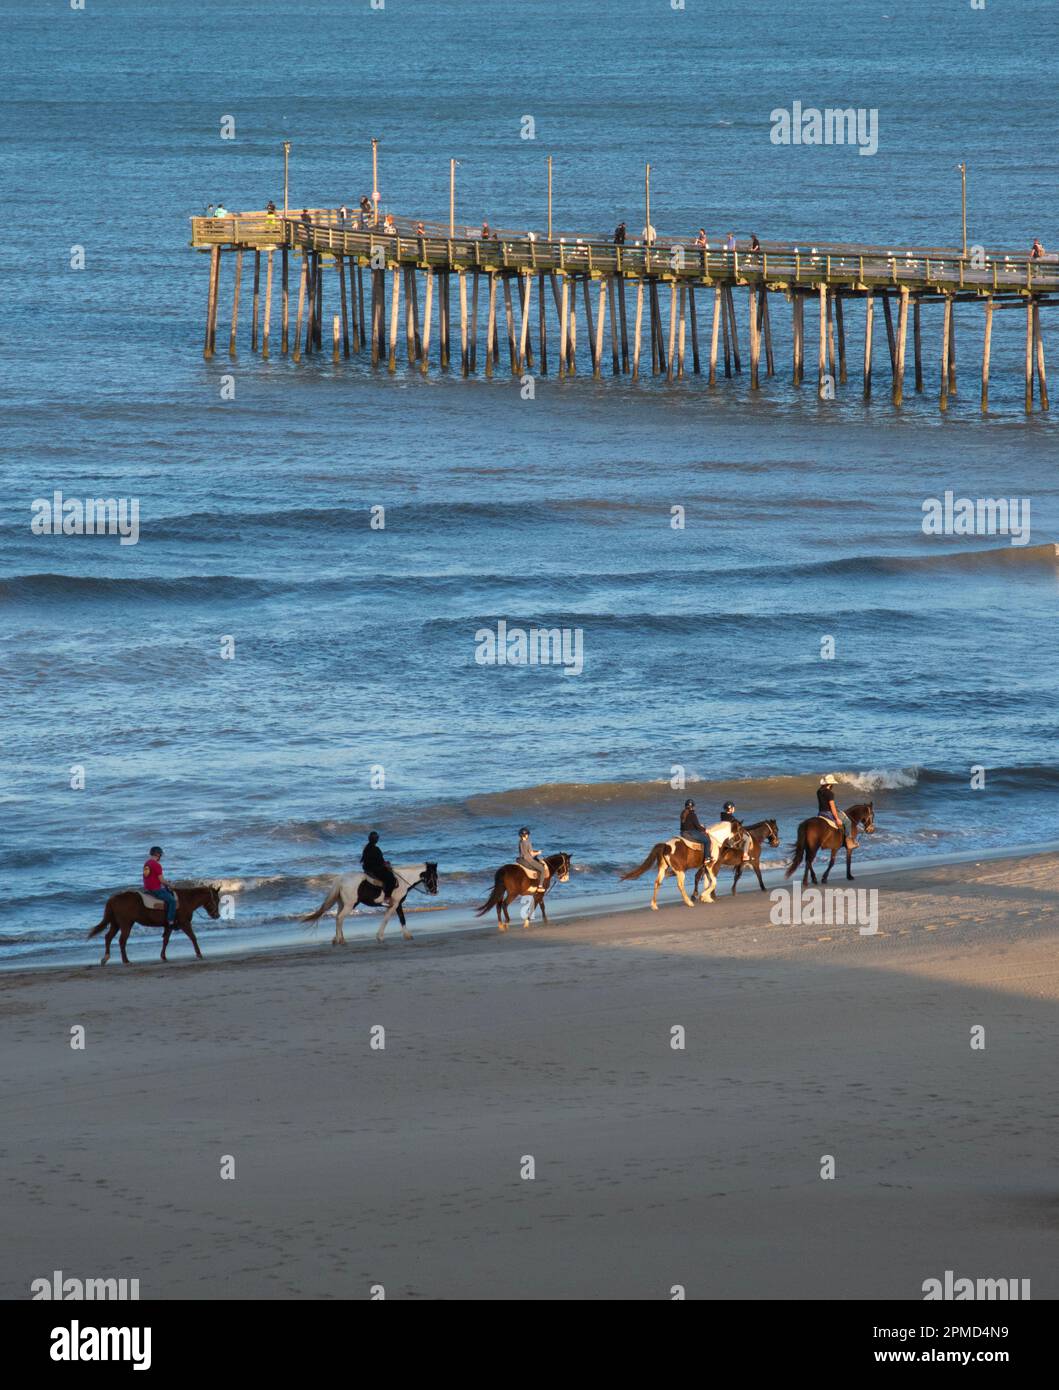 Paseos a caballo en la playa con un muelle de madera en el fondo. Foto de stock